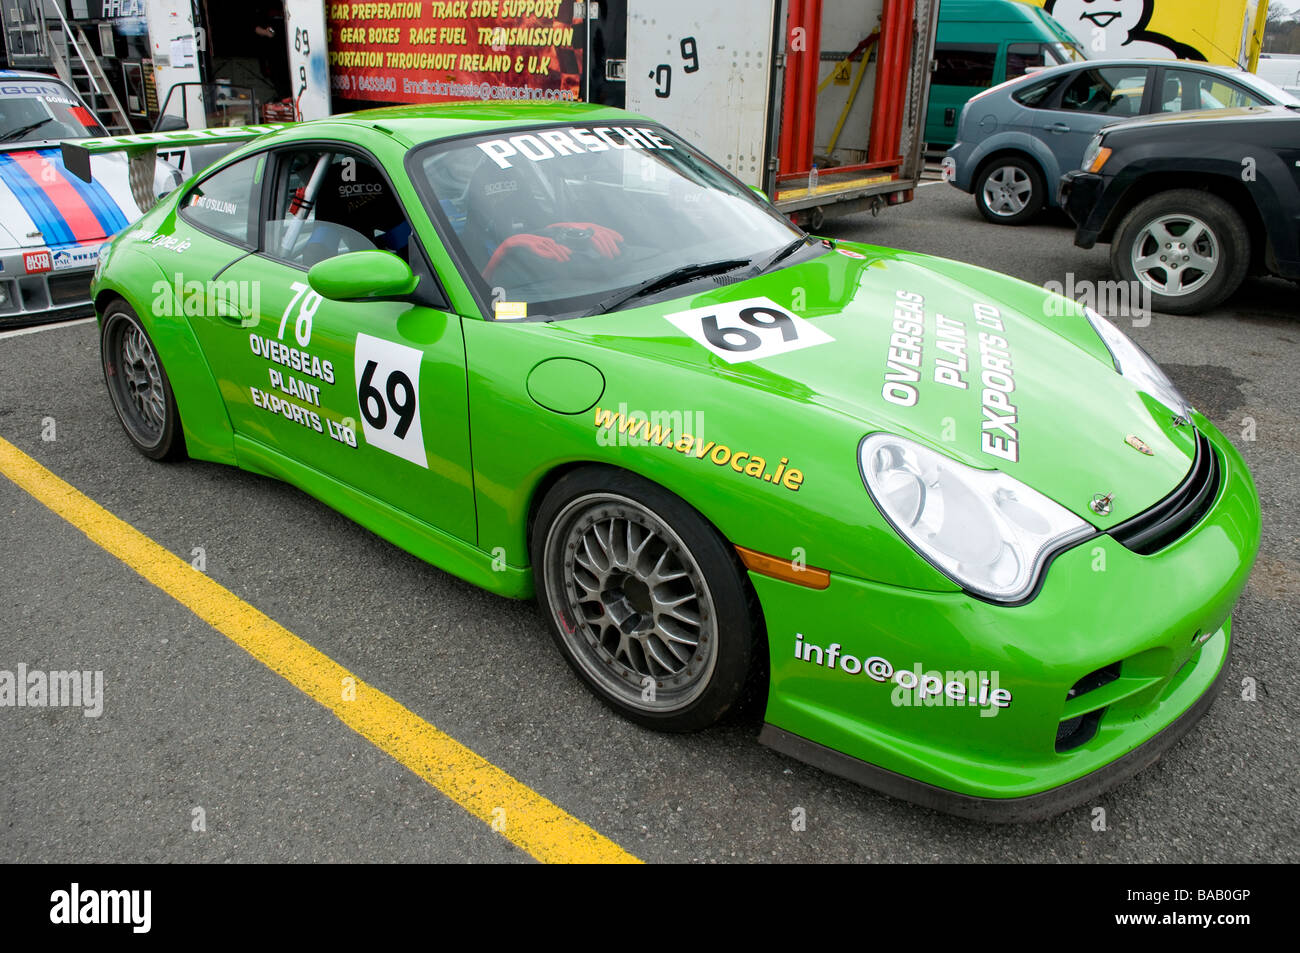 Colore verde brillante Porsche auto racing 69 Foto Stock